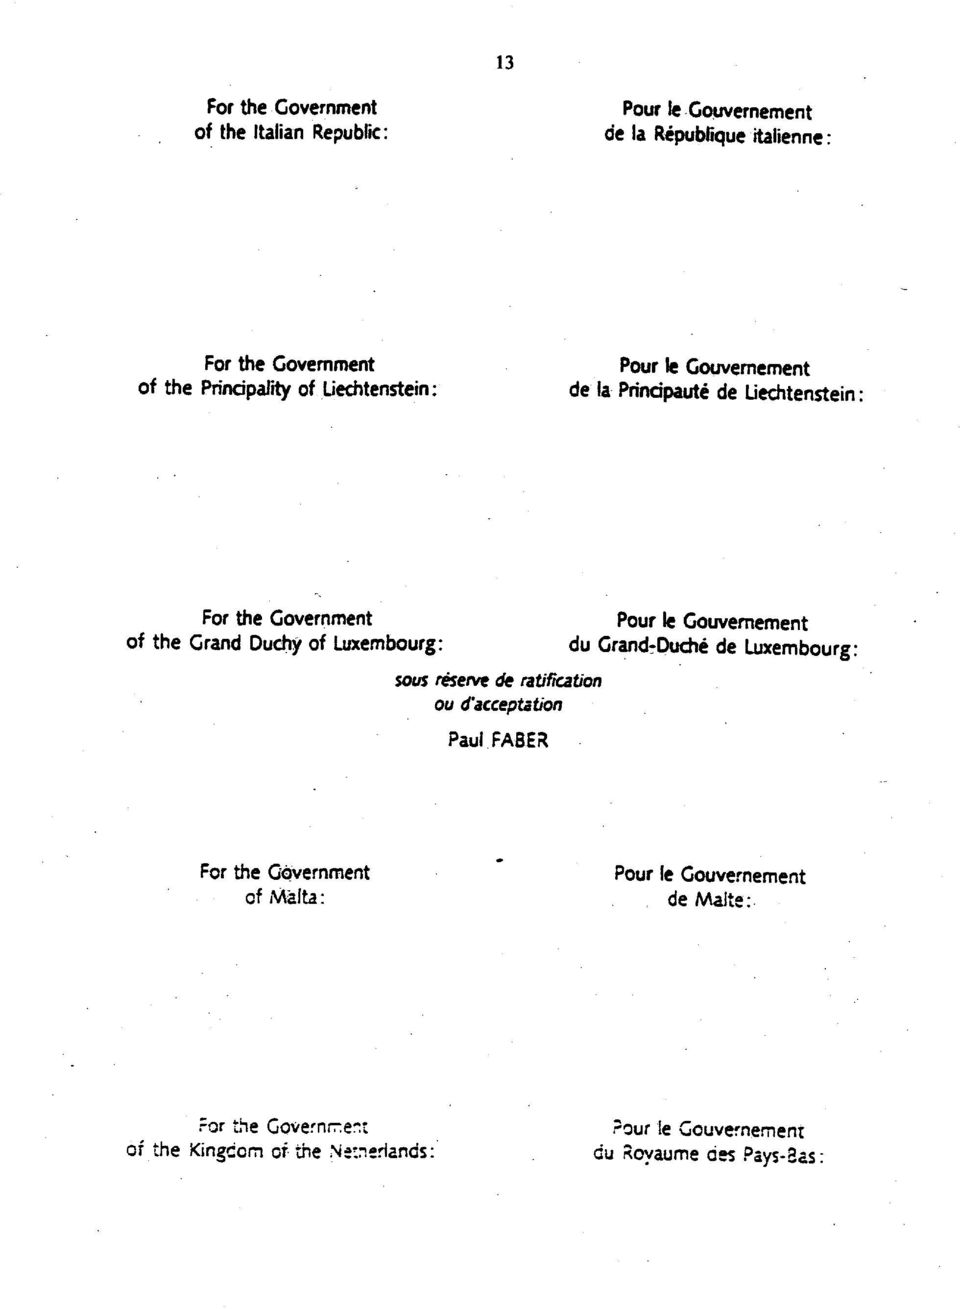 sous reserve de ratification ου ά'acceptation PaulFABER du GrandrDuche de Luxembourg: